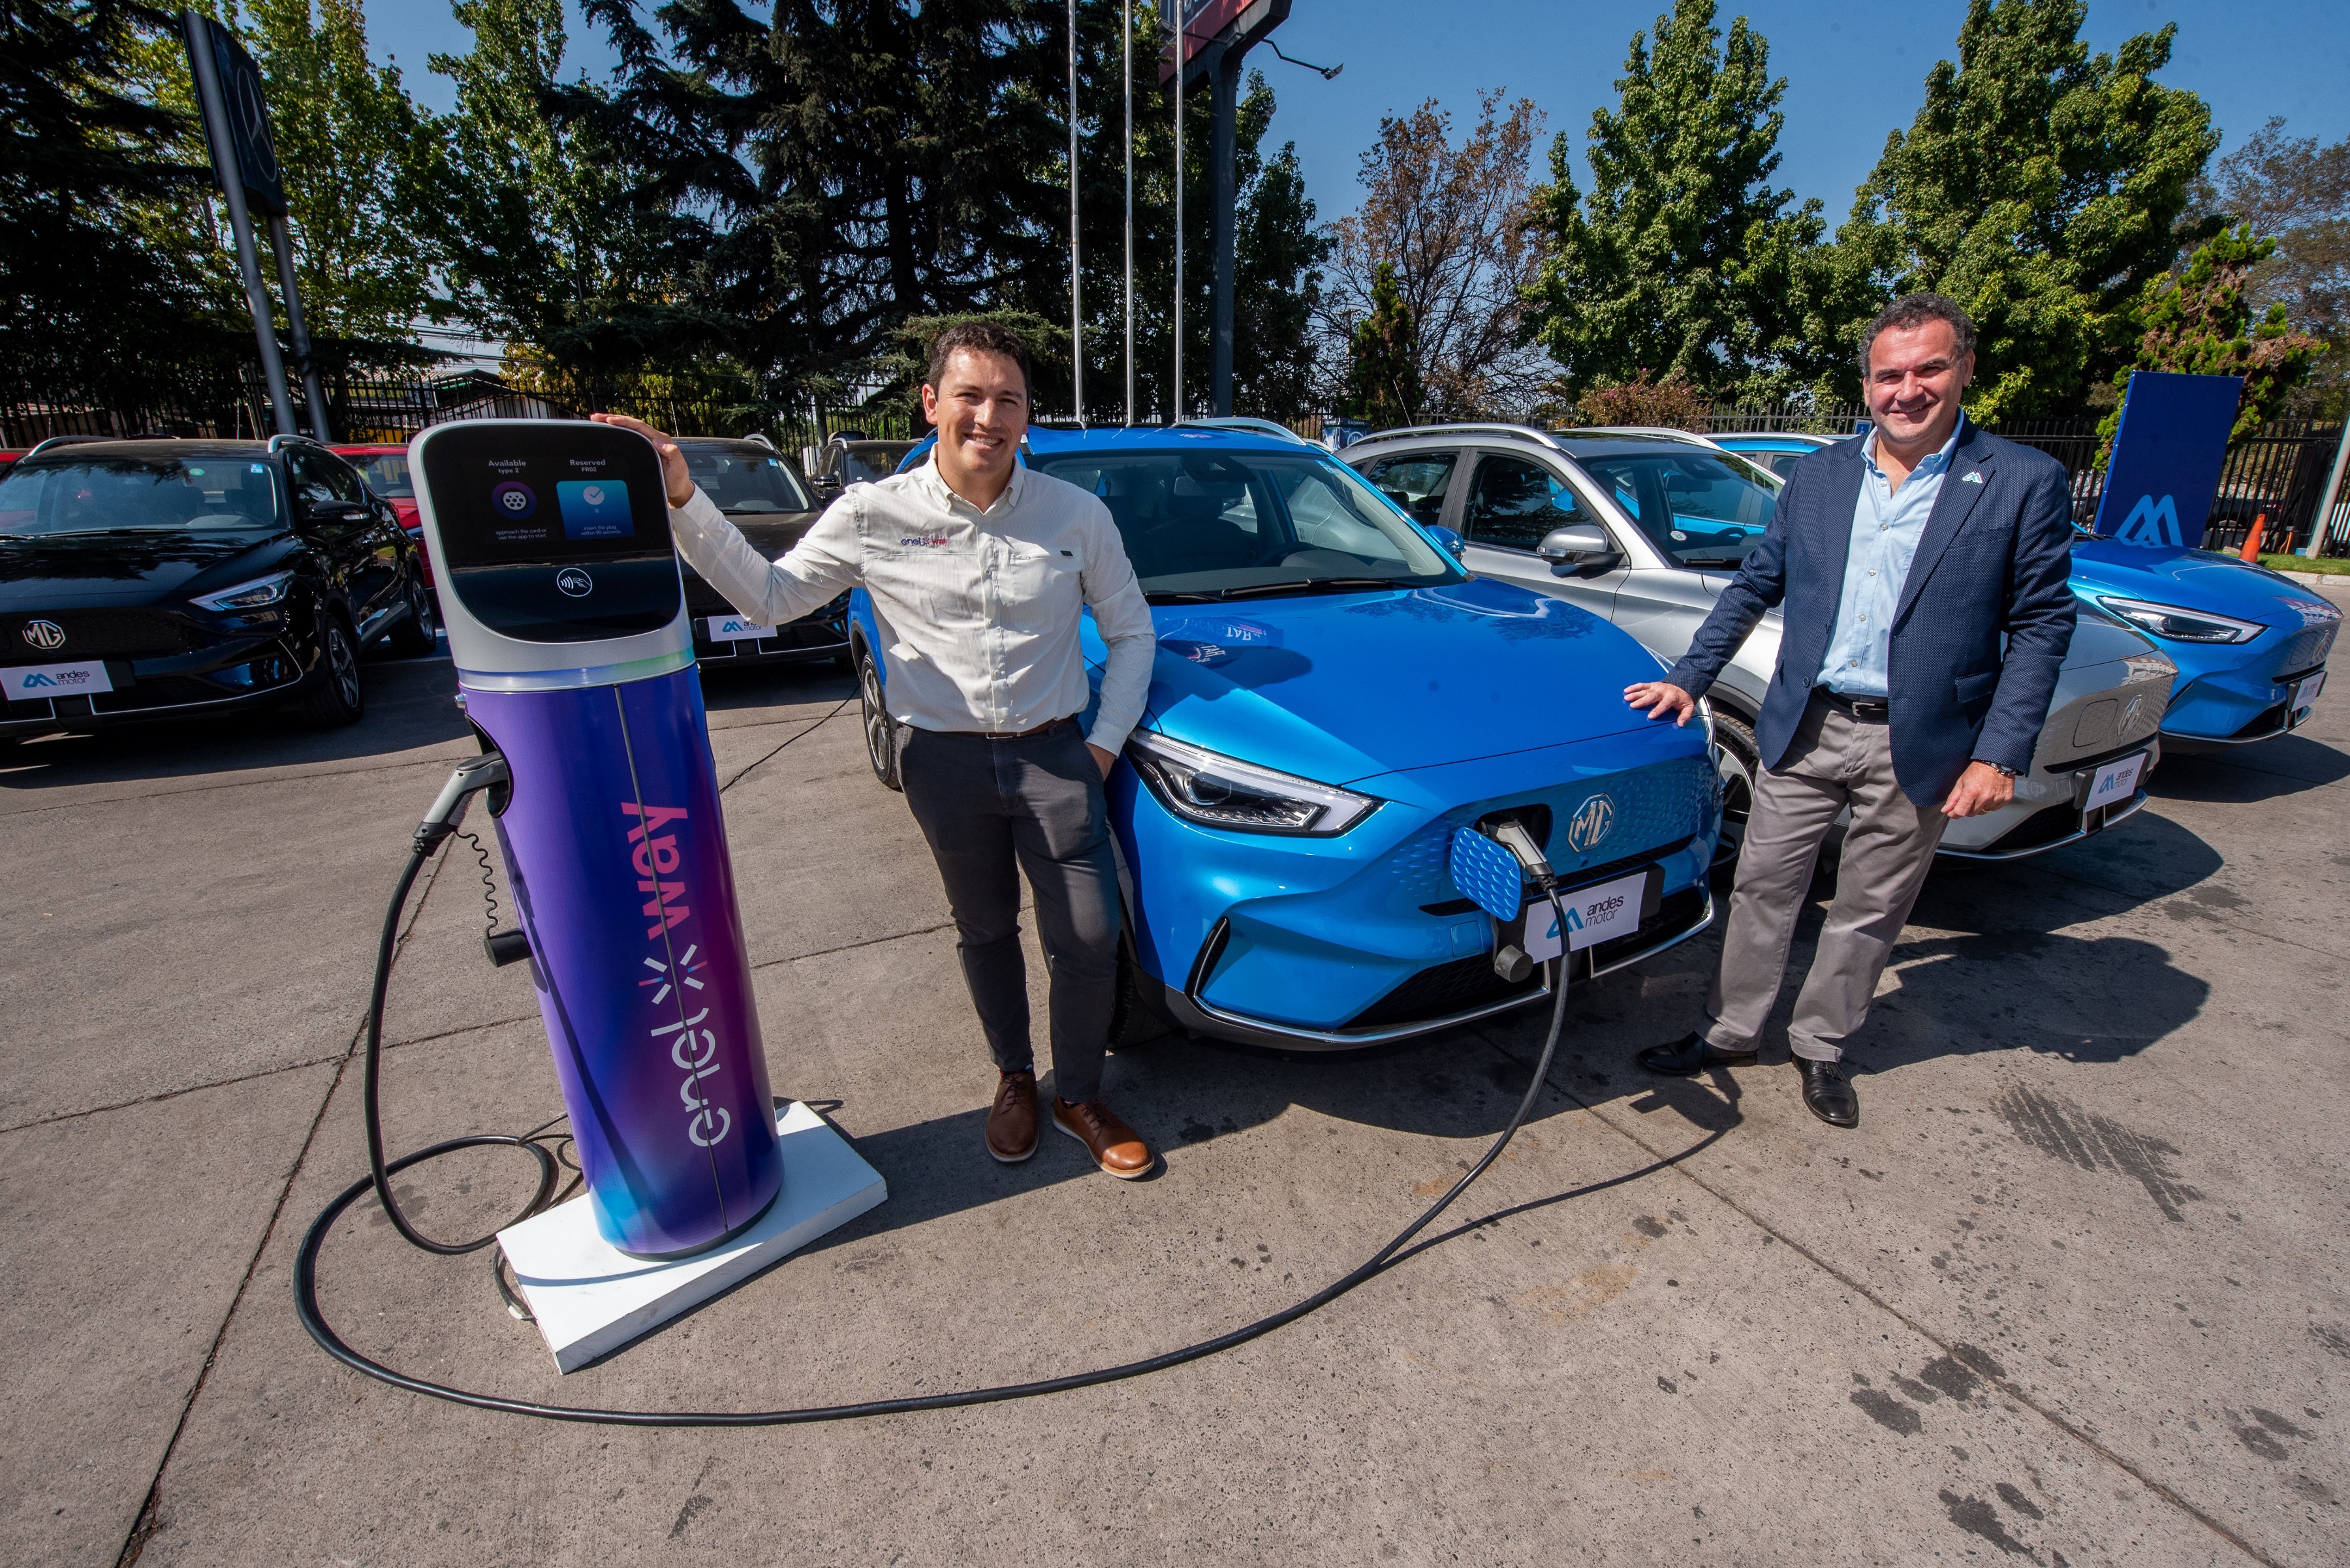 Andes Motor y Enel X Way sellan alianza con entrega de 20 vehículos eléctricos para app de viajes compartidos